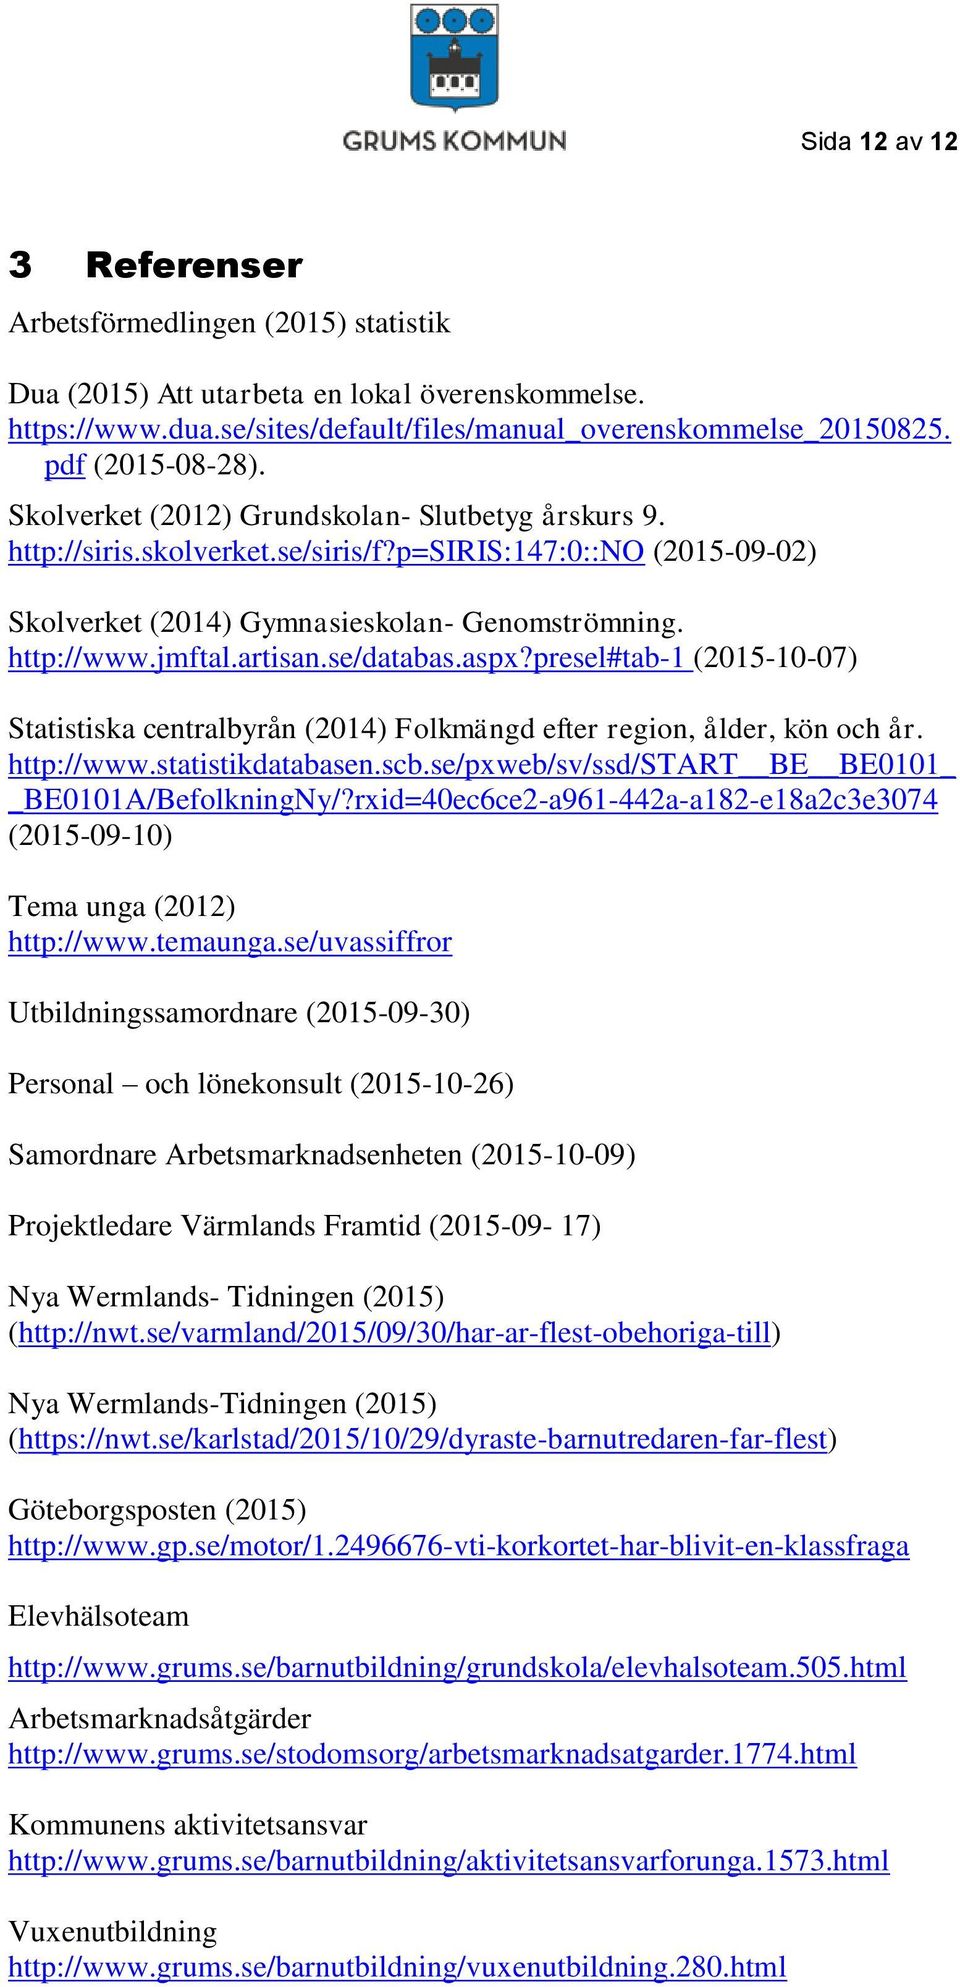 jmftal.artisan.se/databas.aspx?presel#tab-1 (2015-10-07) Statistiska centralbyrån (2014) Folkmängd efter region, ålder, kön och år. http://www.statistikdatabasen.scb.